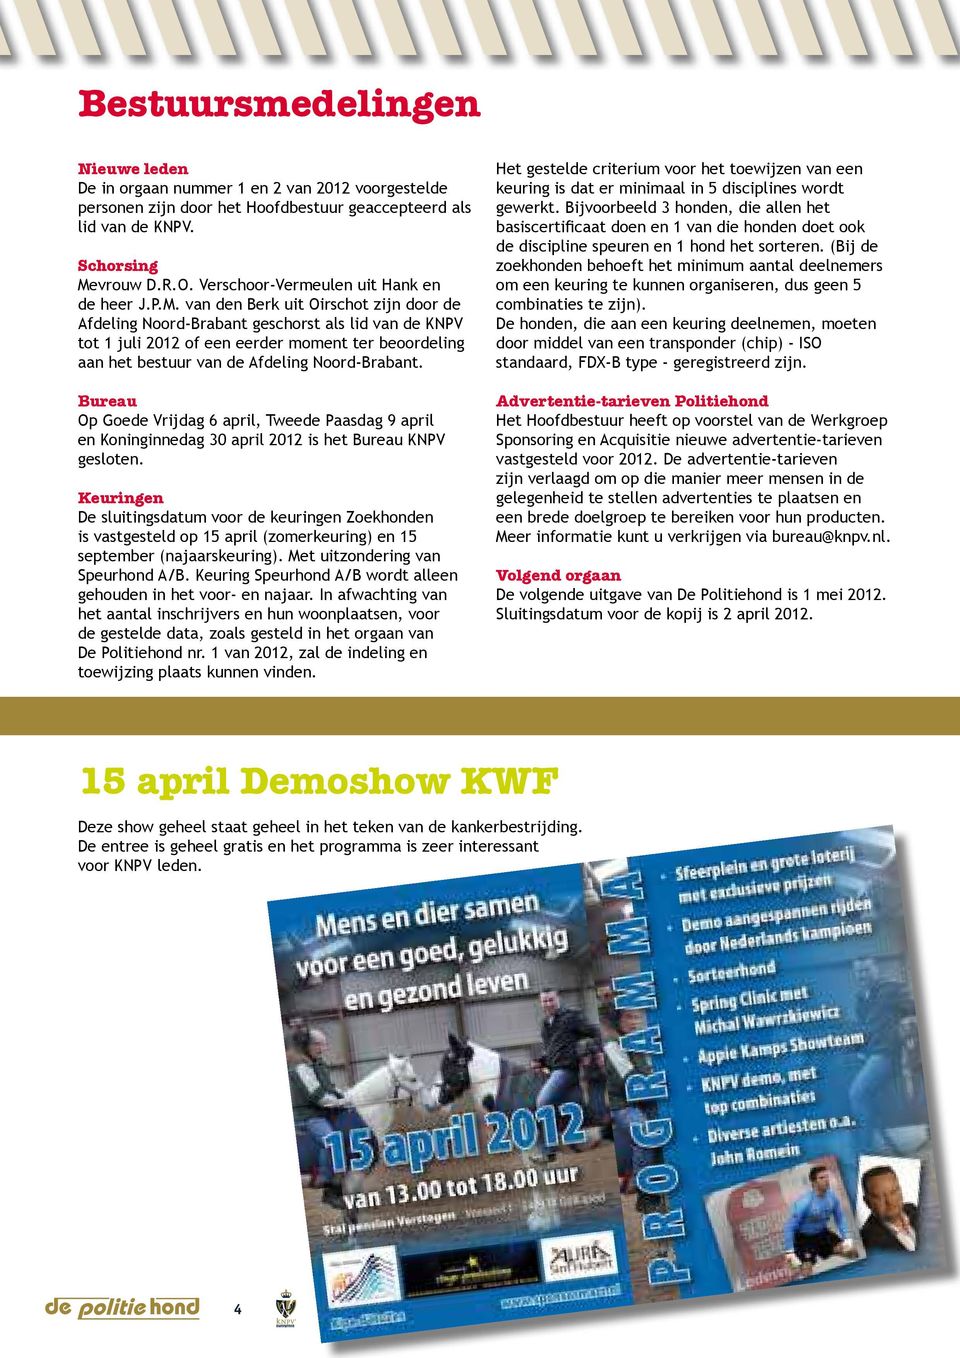 van den Berk uit Oirschot zijn door de Afdeling Noord-Brabant geschorst als lid van de KNPV tot 1 juli 2012 of een eerder moment ter beoordeling aan het bestuur van de Afdeling Noord-Brabant.